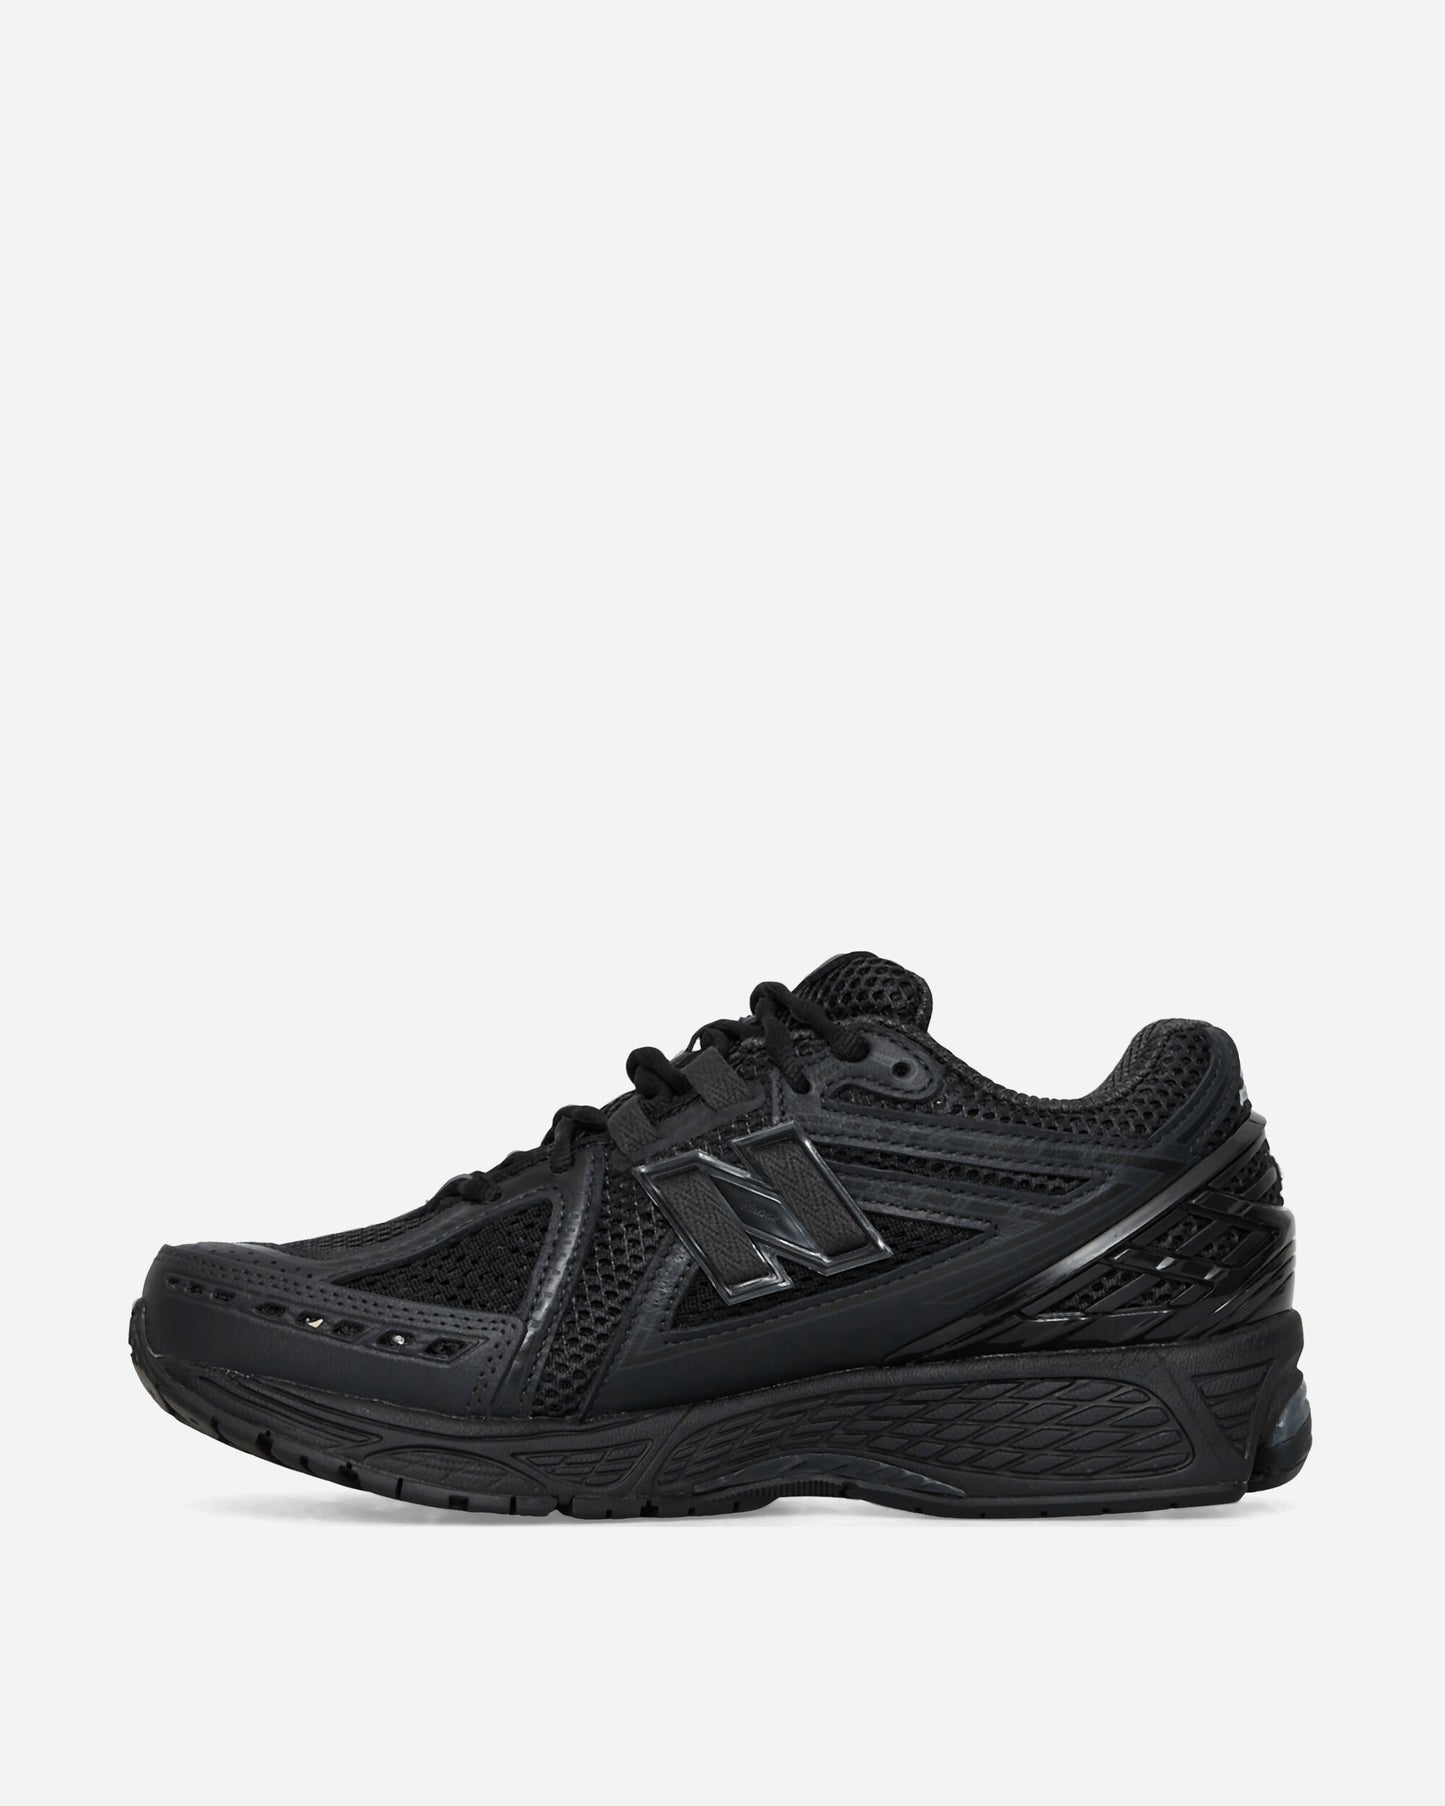 Comme Des Garçons Homme Mens Shoes X New Balance M1906Rcm Black/Black Sneakers Low HL-K101-W23 1